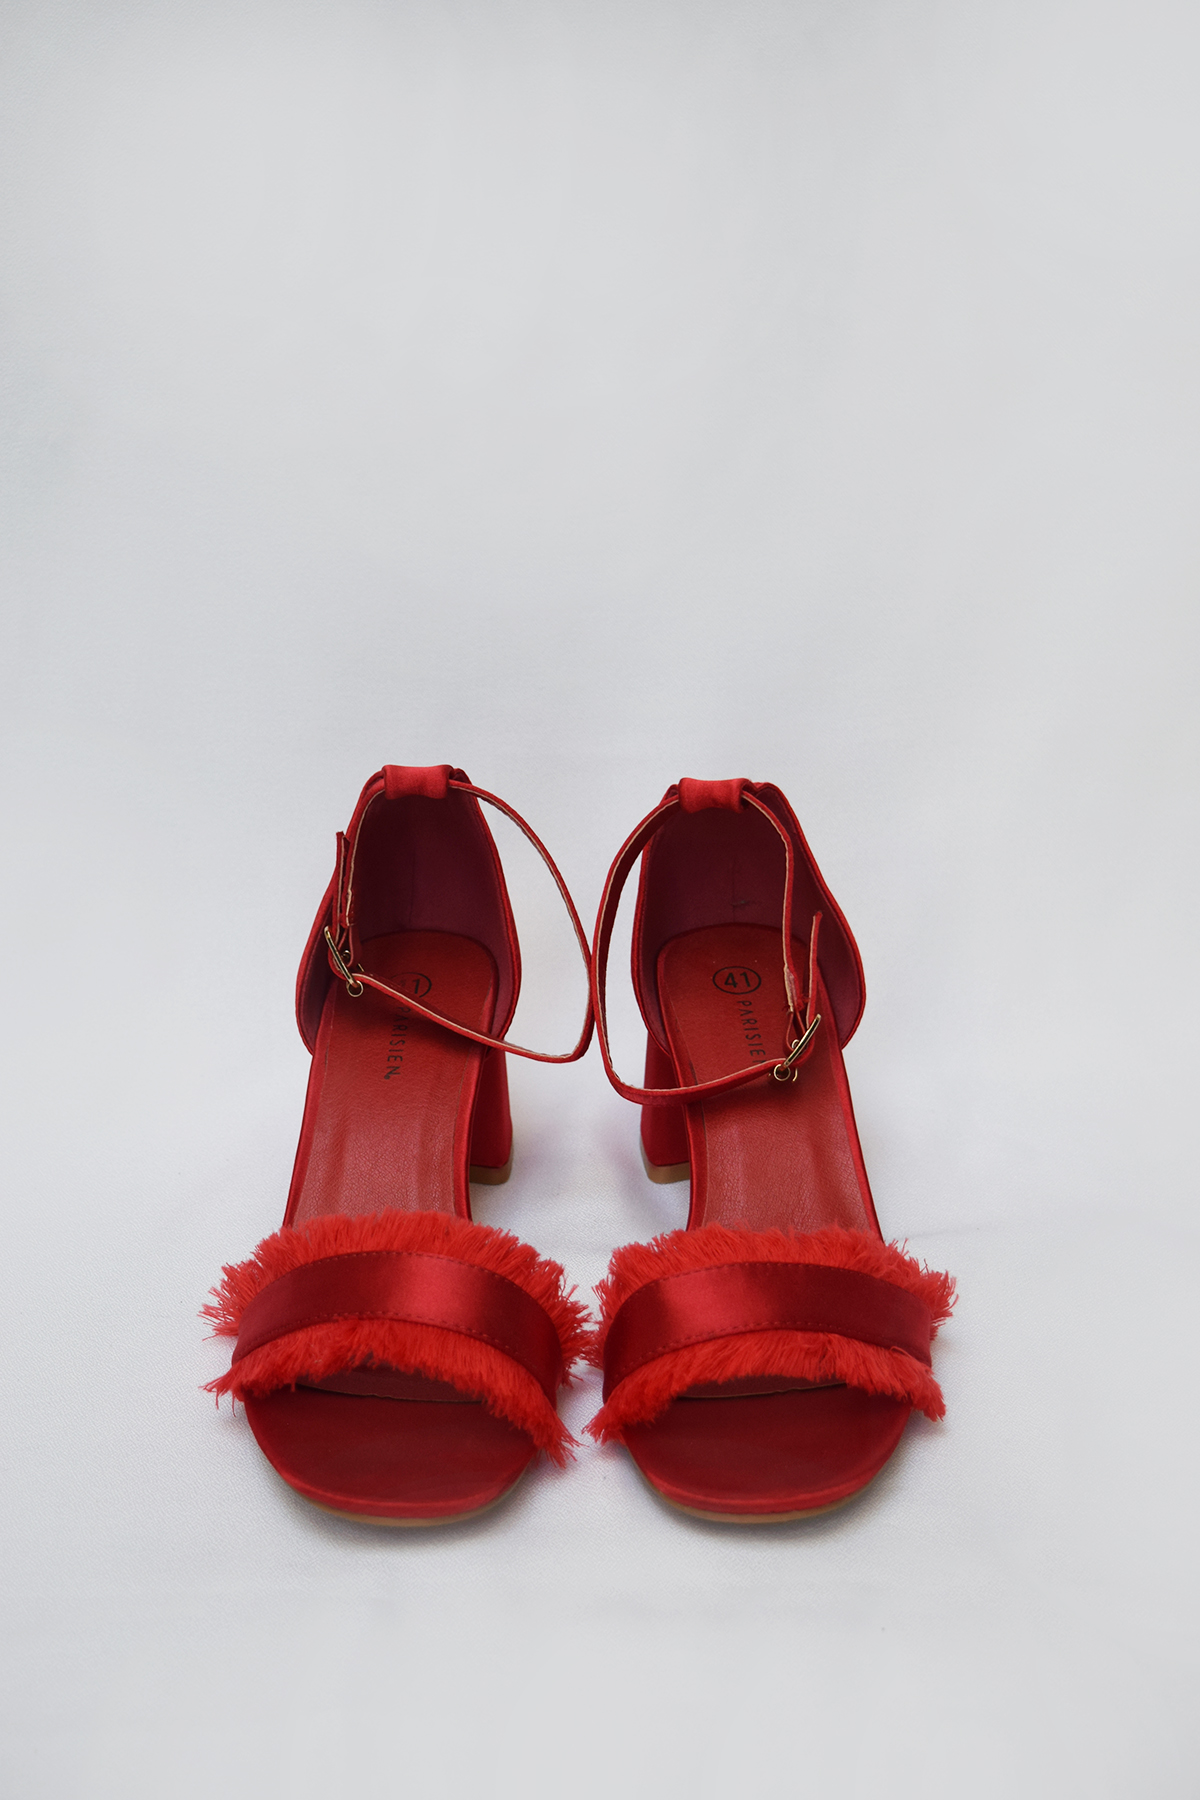 Sandalias en satén rojo con flecos